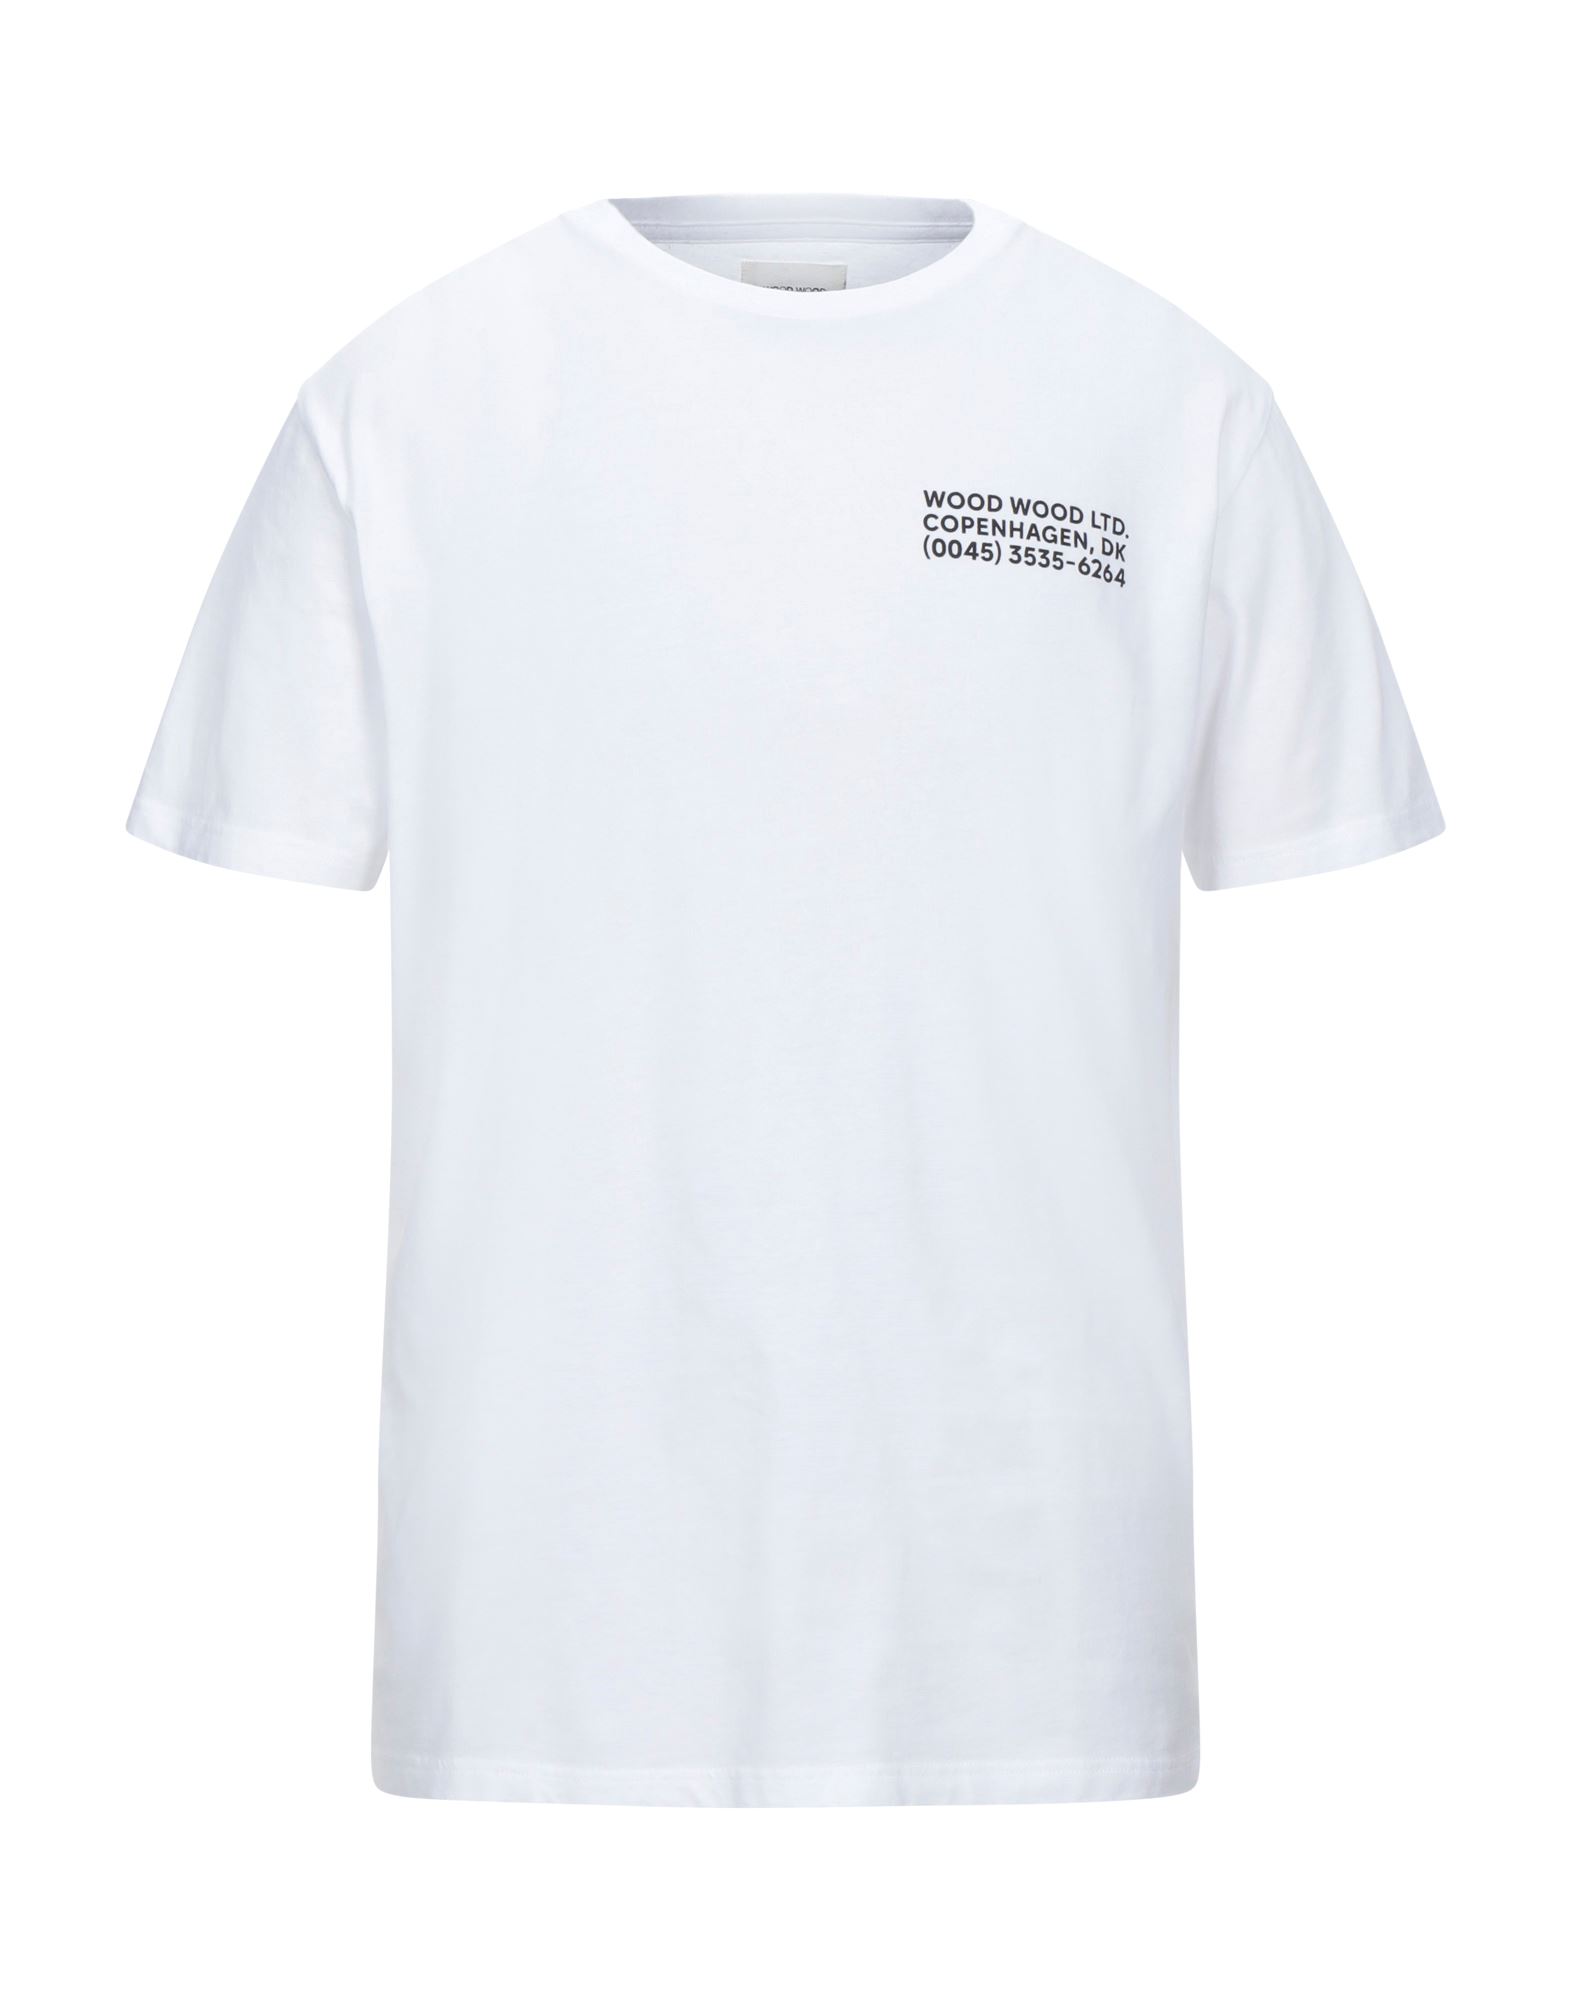 WOOD WOOD T-shirts - Item 12530225